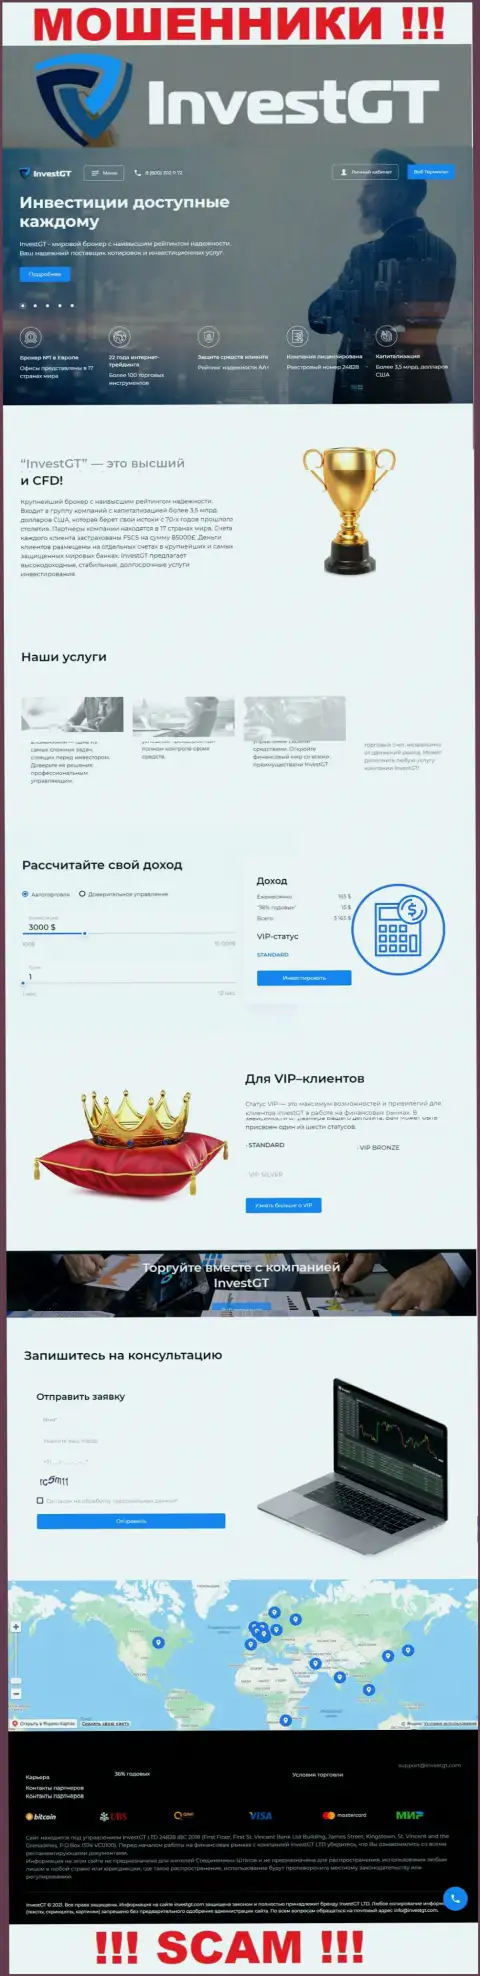 InvestGT Com - это официальная веб-страничка ворюг Инвест ГТ